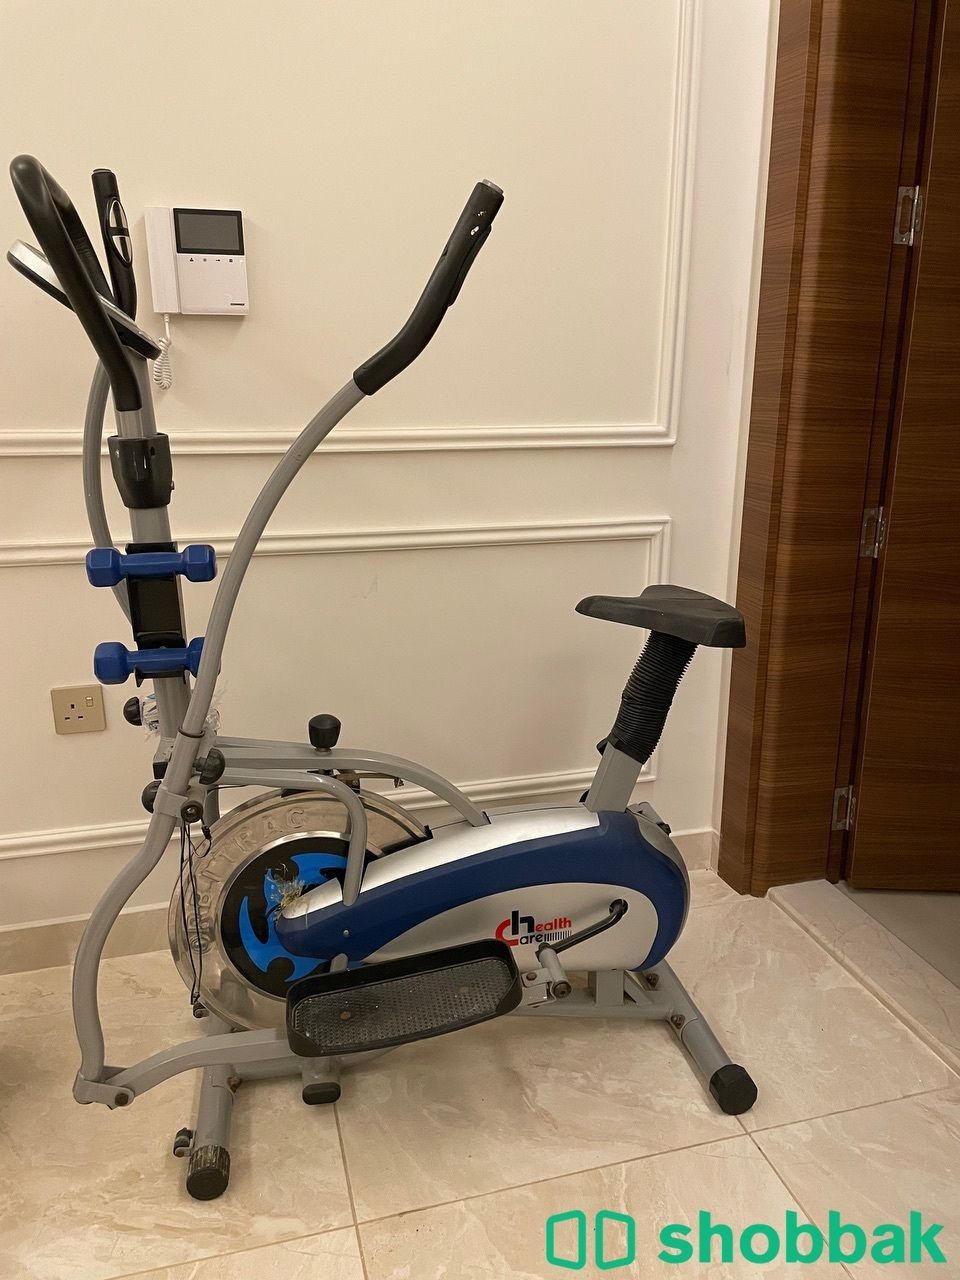 Health sports treadmill جهاز رياضة مشي  Shobbak Saudi Arabia